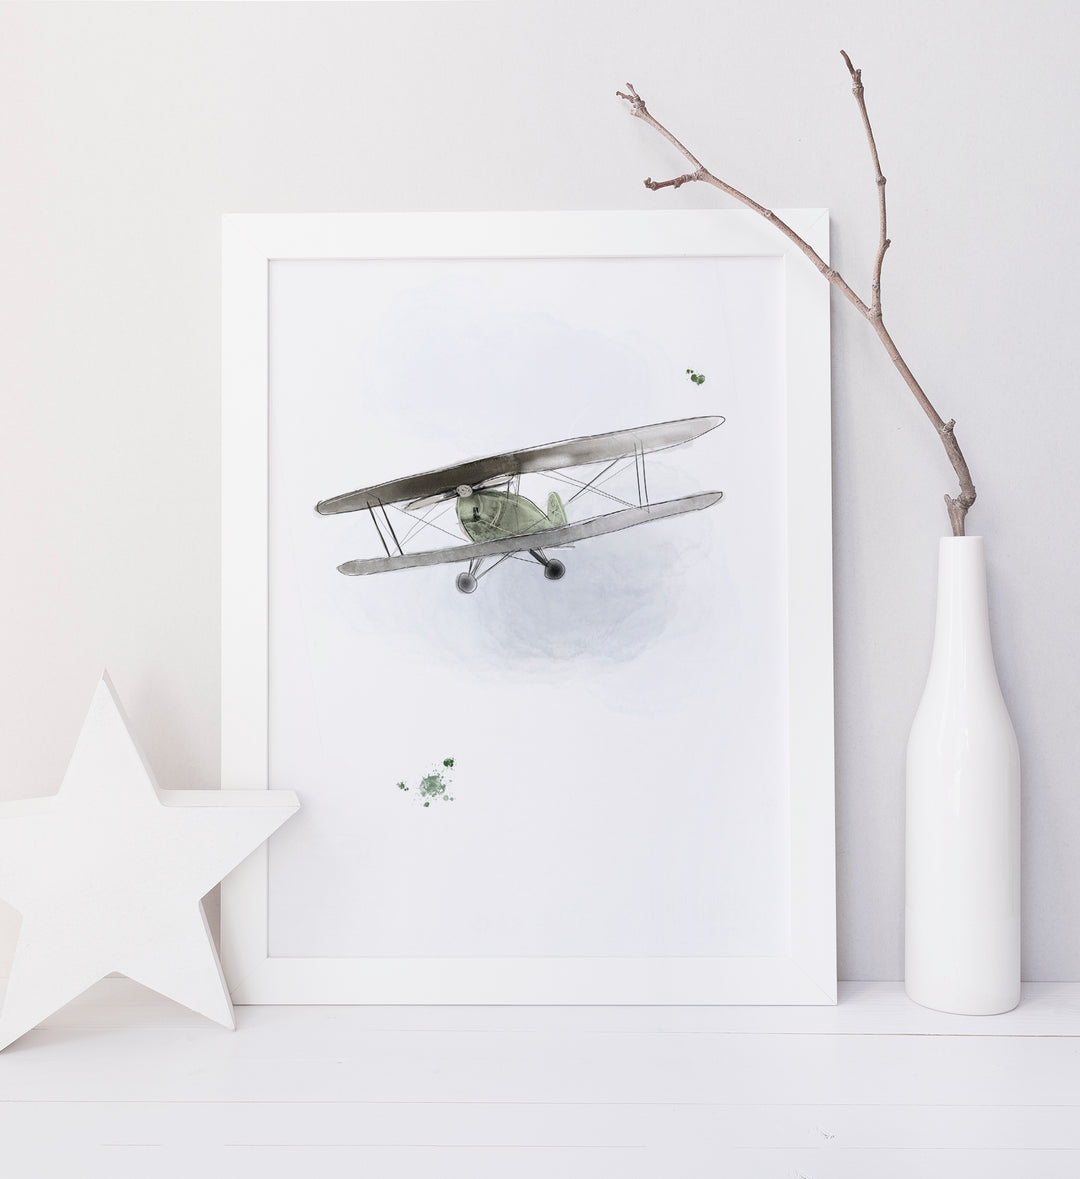 Print - Vintage airplane - Biplane